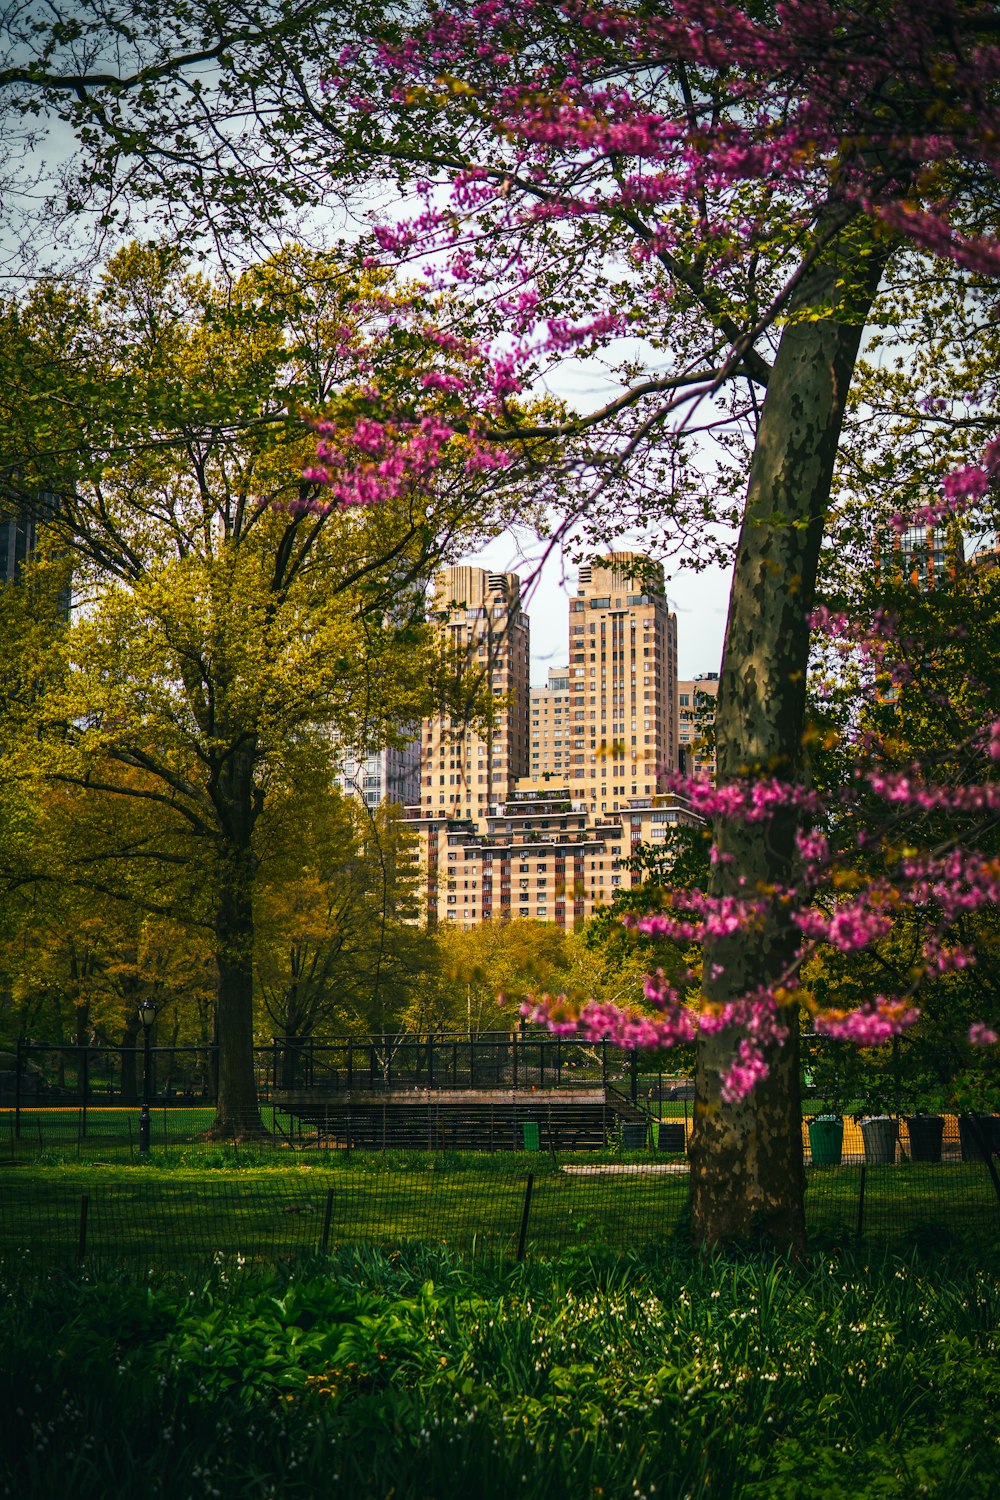 Un parco con alberi e fiori in primo piano foto – Stati uniti d'america  Immagine gratuita su Unsplash